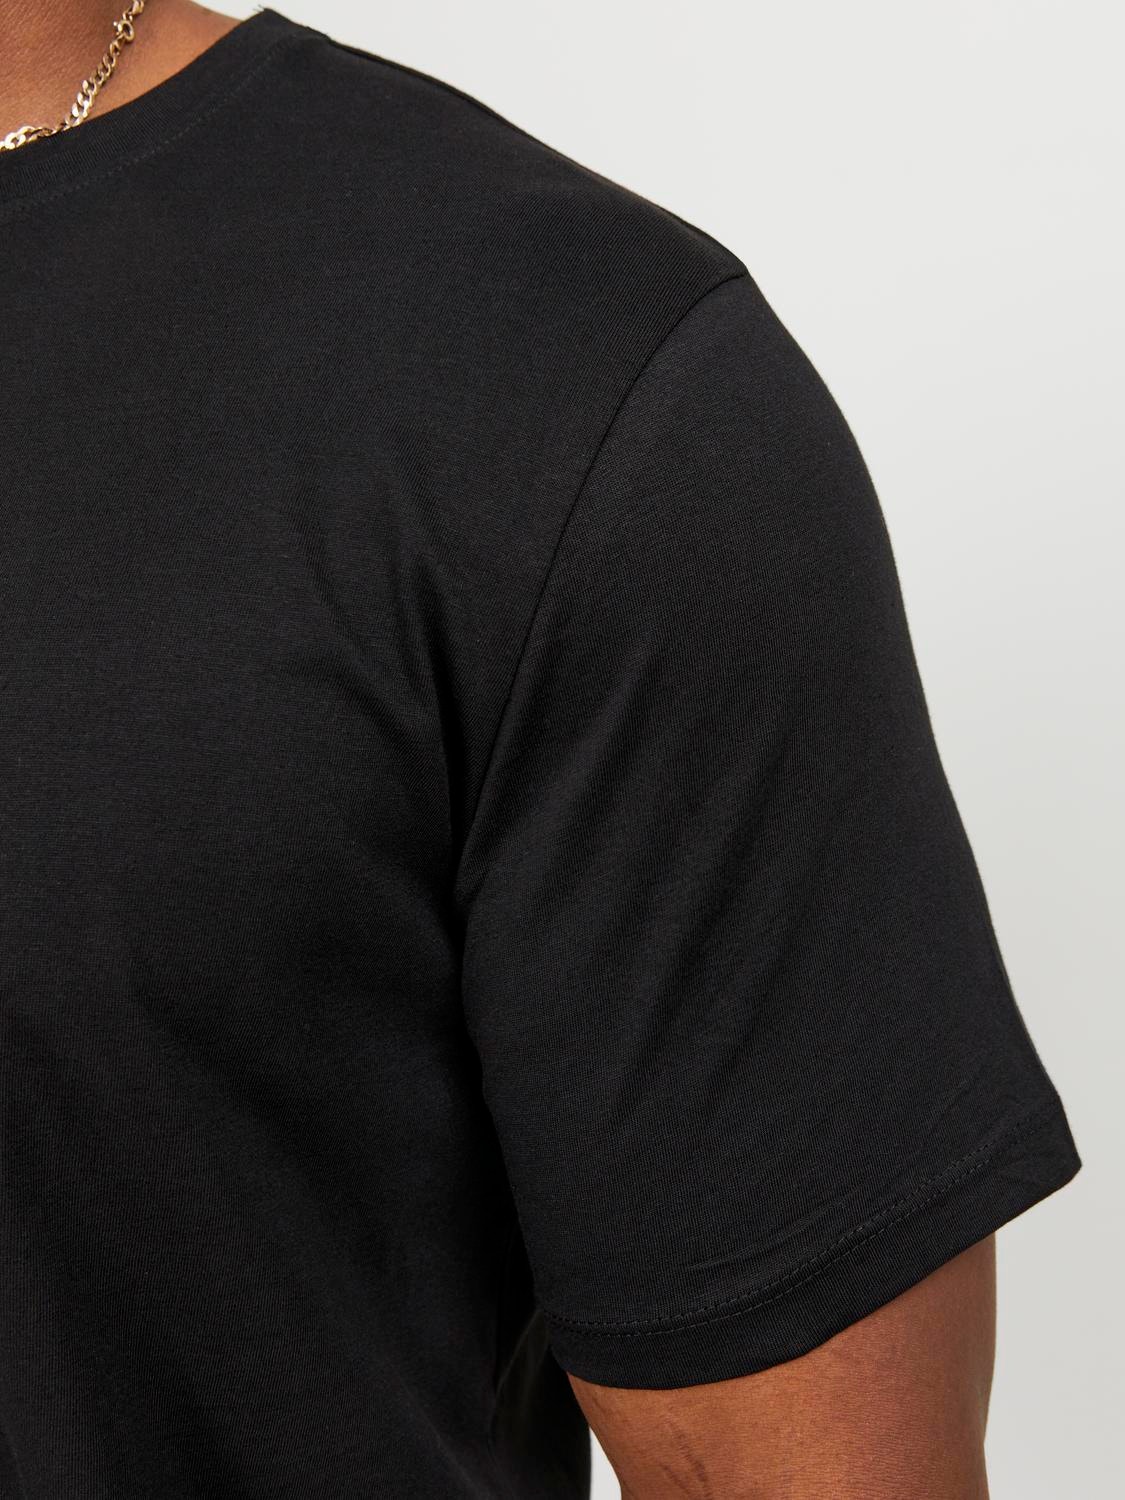 Jack & Jones Plus Size Enfärgat T-shirt -Black - 12184933